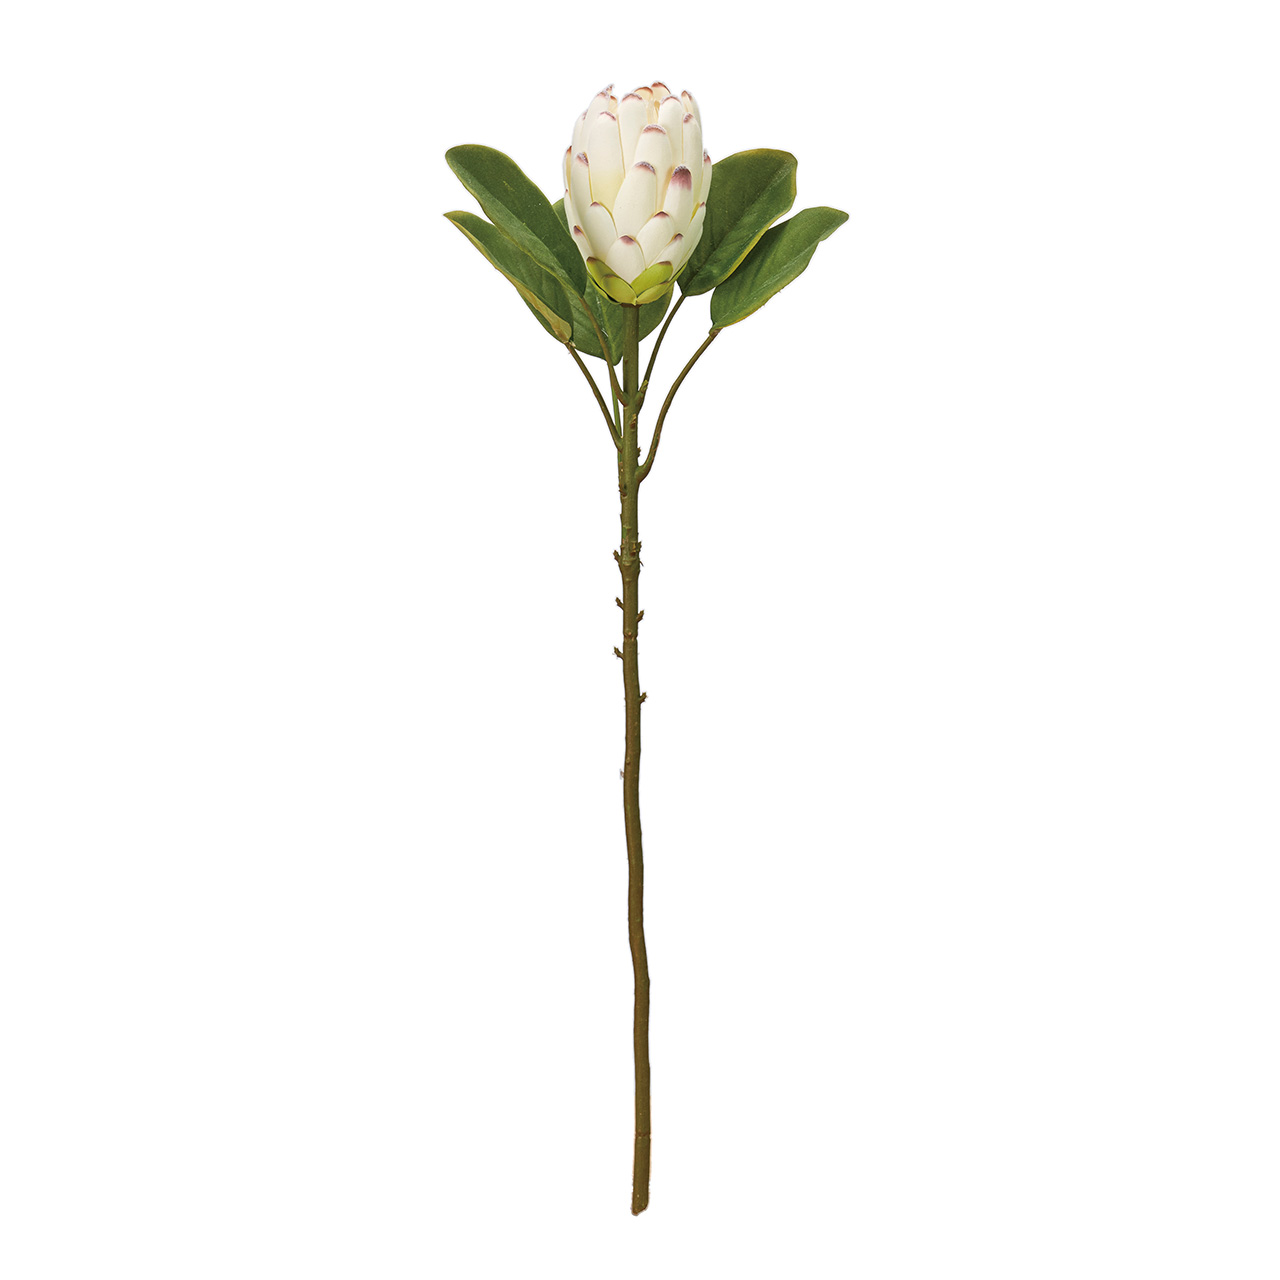 MAGIQ　マカロンプロテア　クリームホワイト　アーティフィシャルフラワー　造花　ワイルドフラワー　FM000581-001